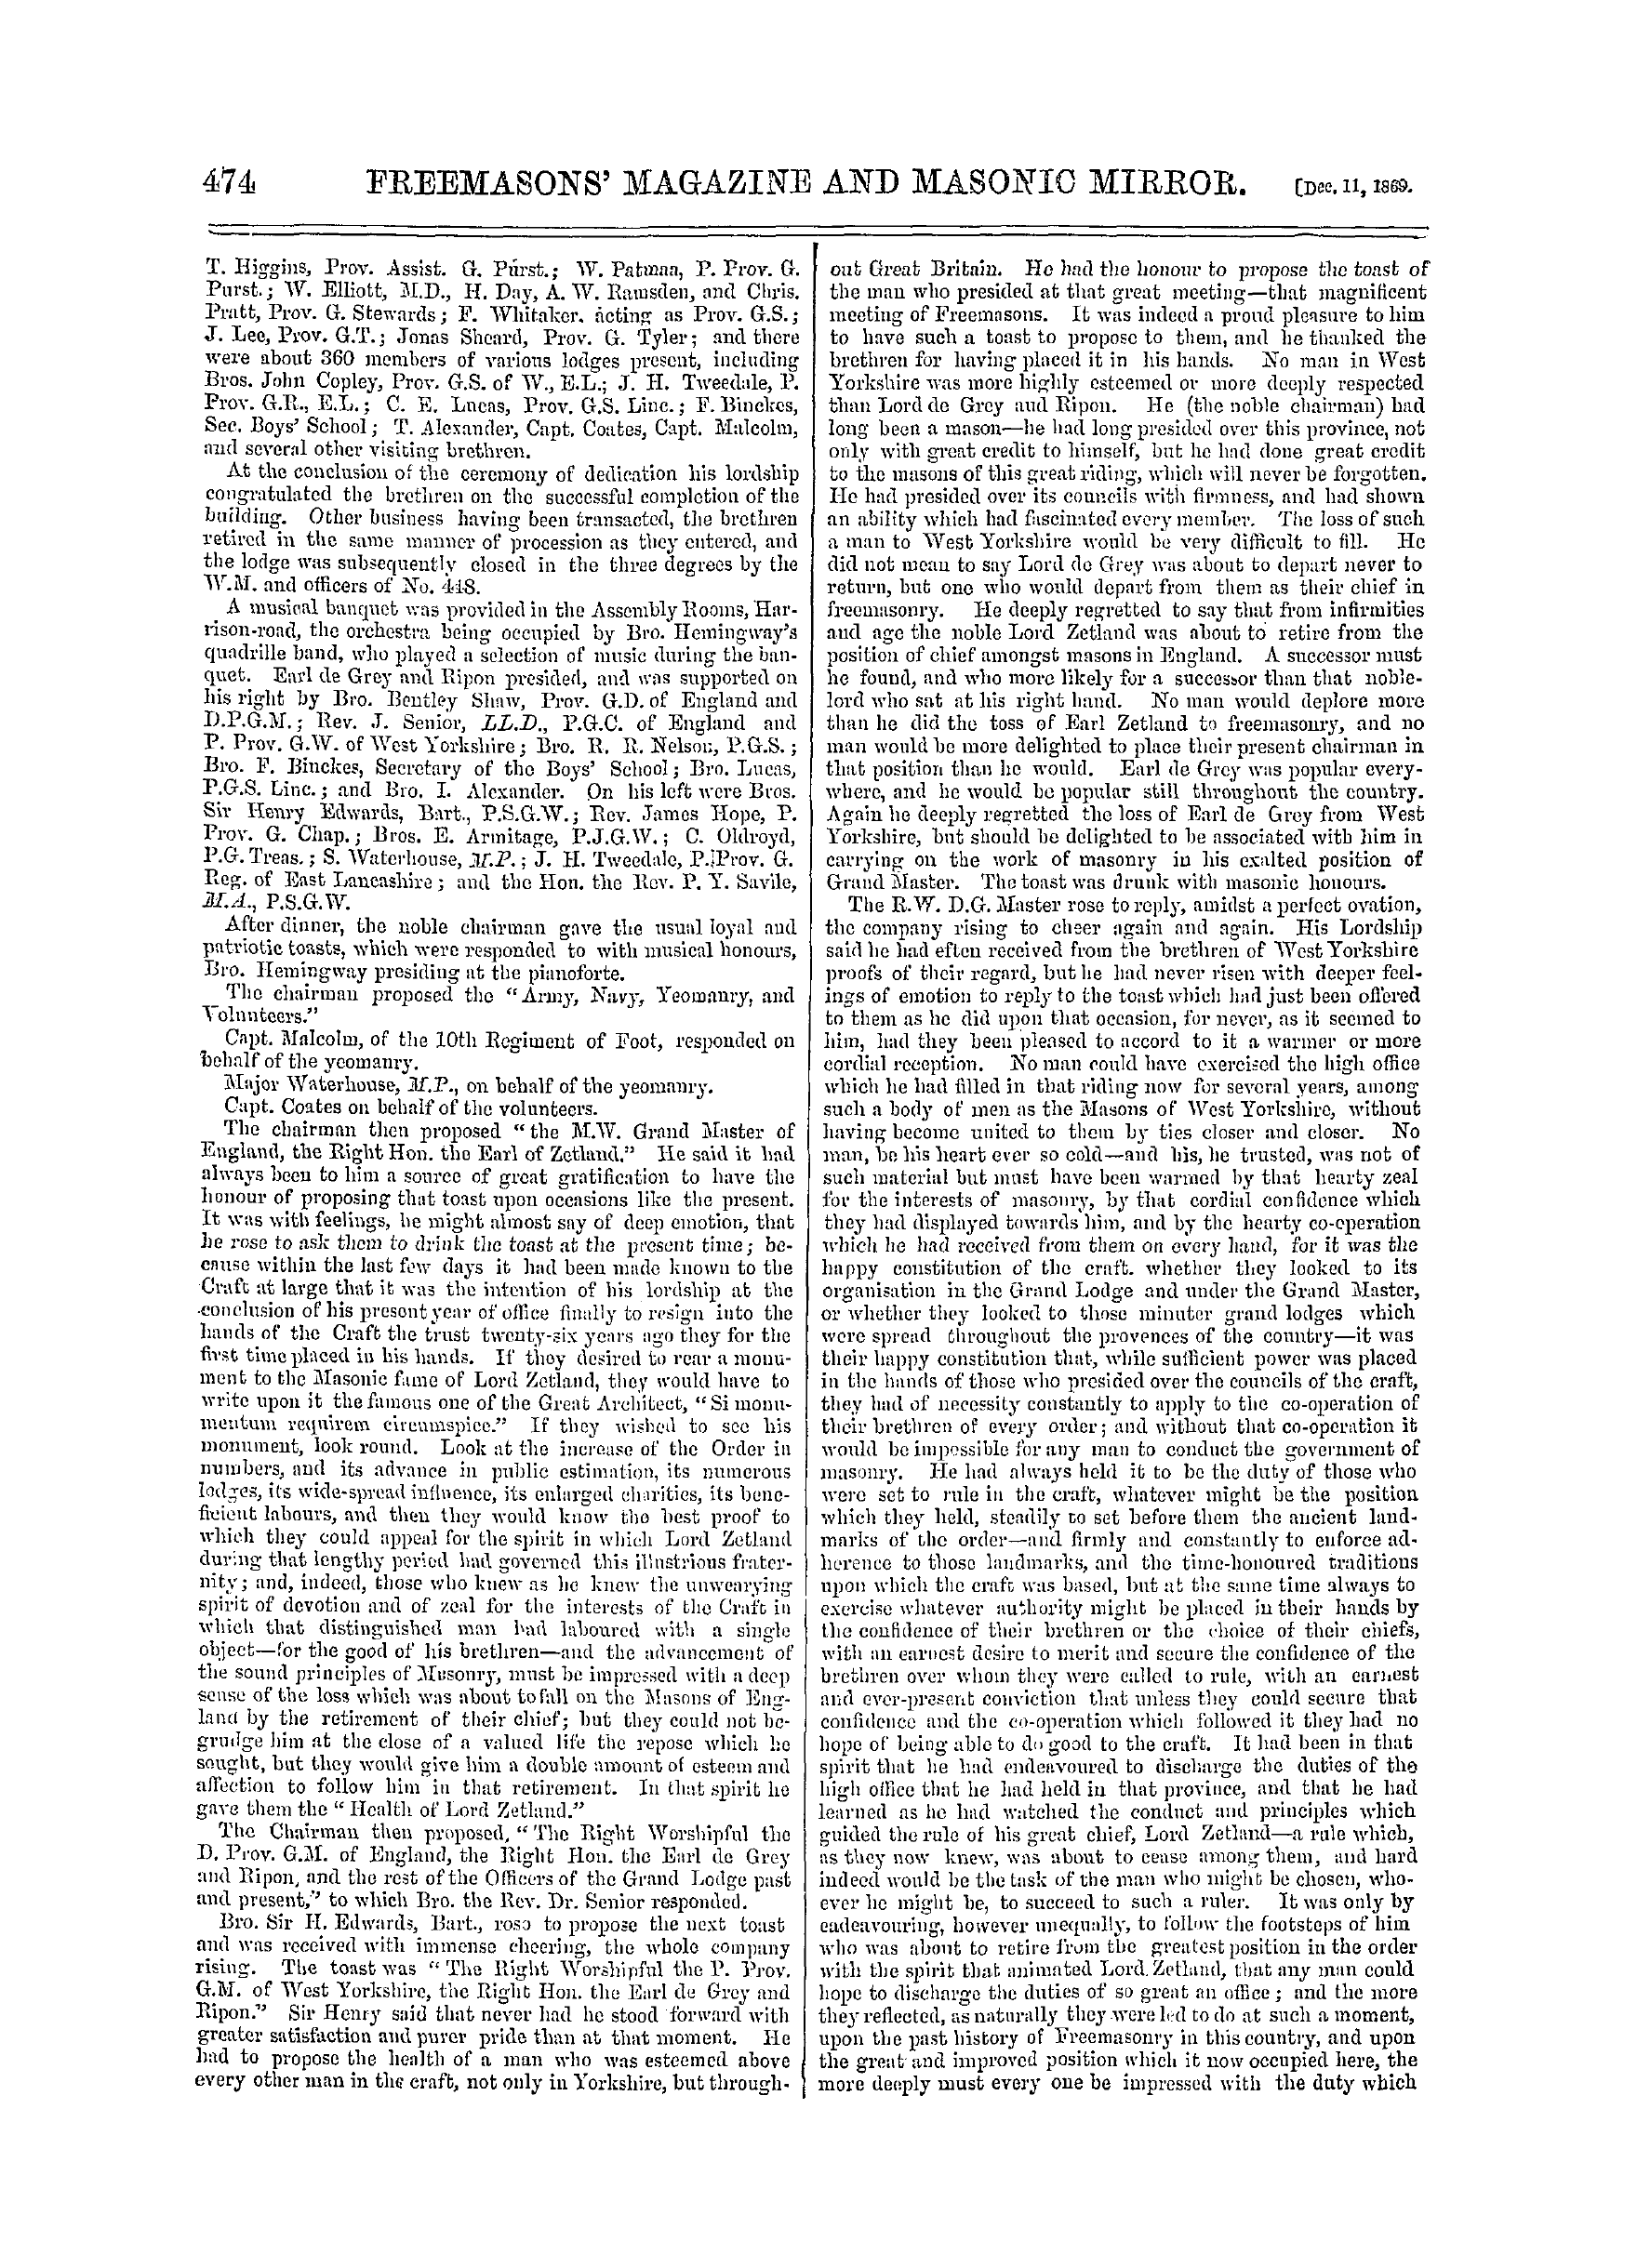 The Freemasons' Monthly Magazine: 1869-12-11: 14